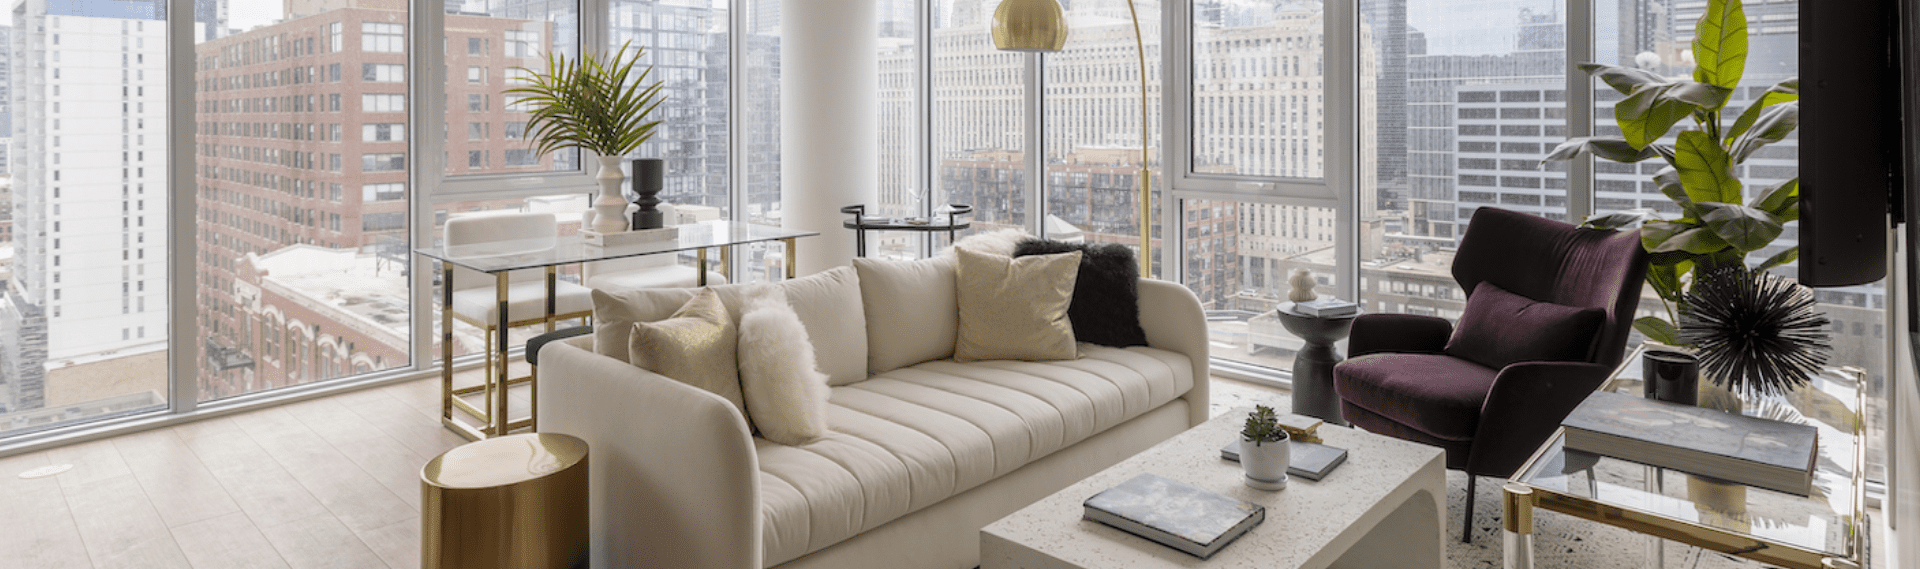 Luxury apartments Chicago Interior